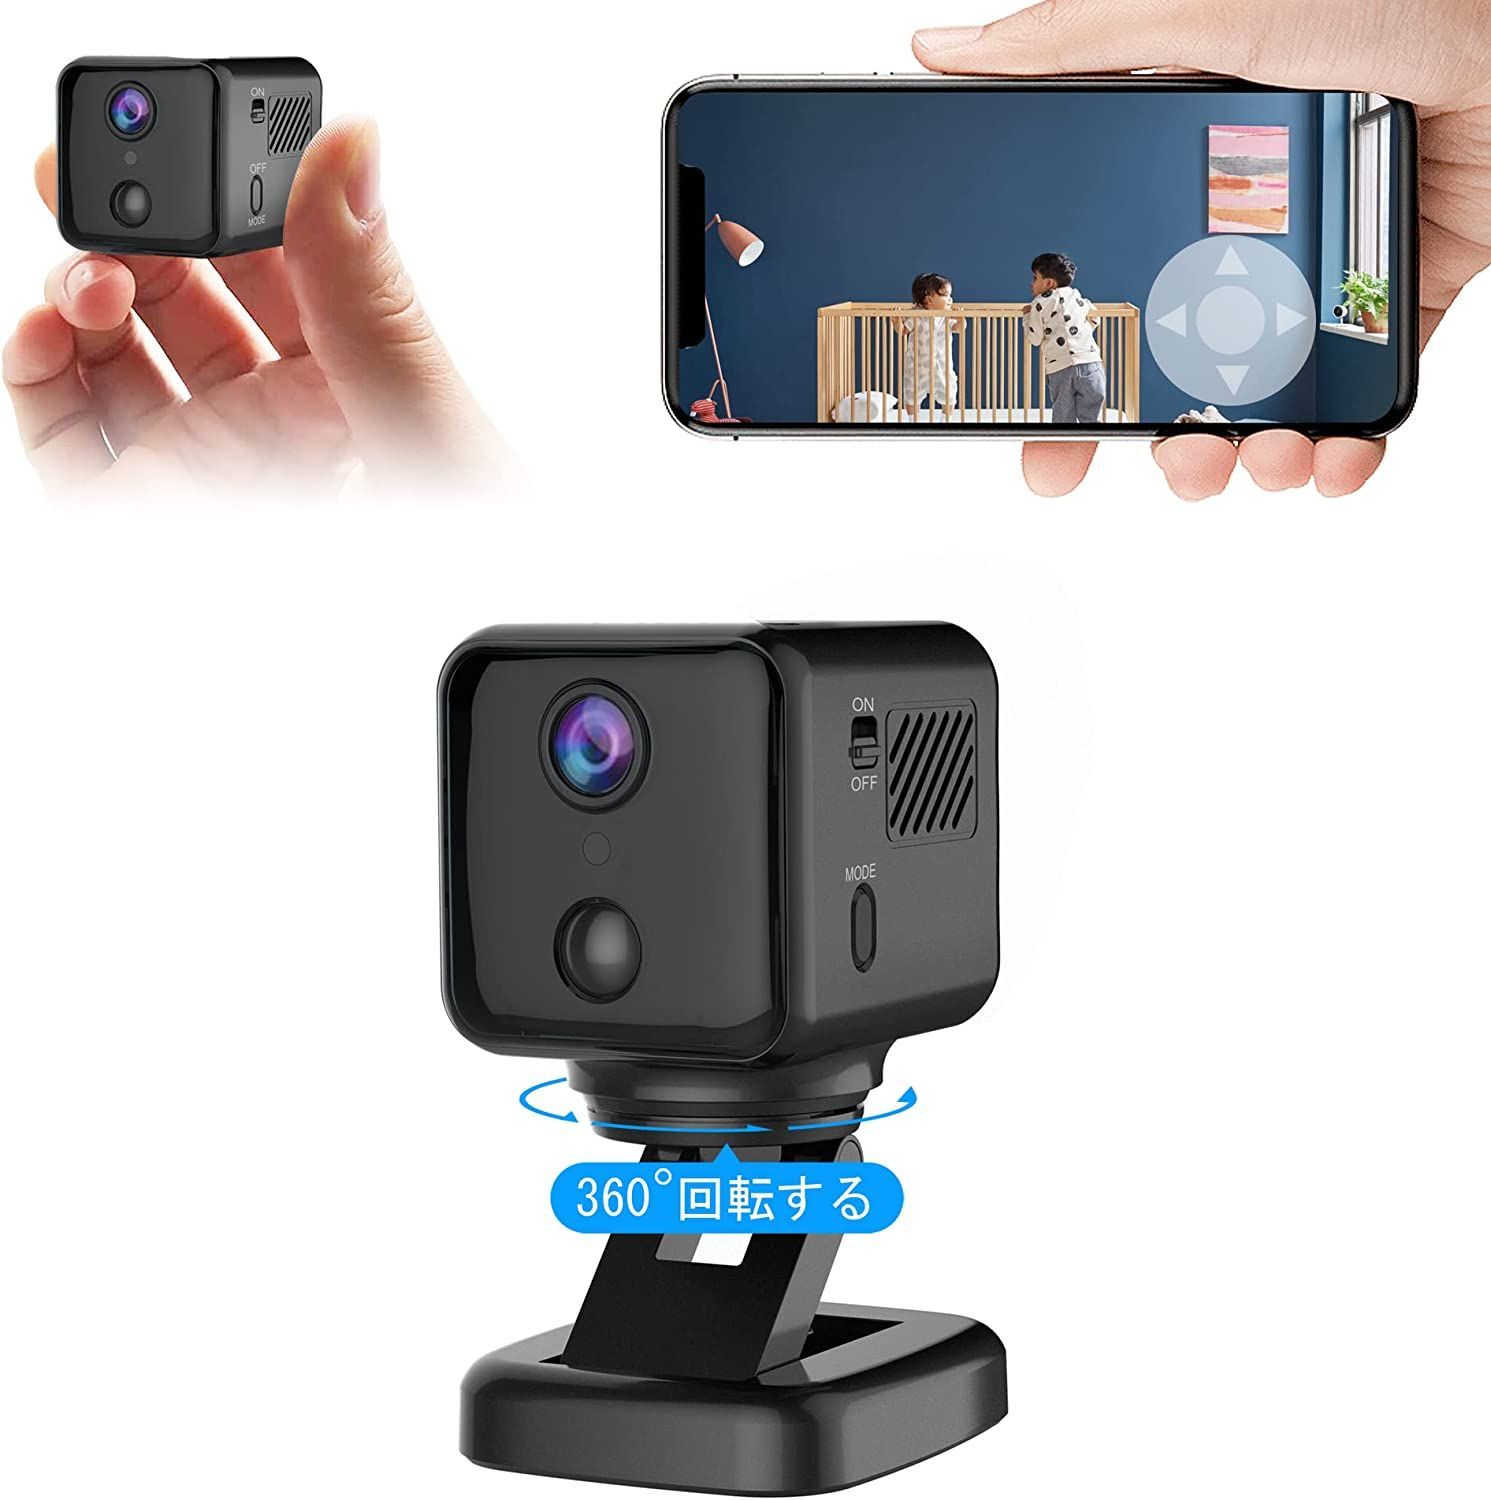 小型カメラ 防犯カメラ WIFI機能付き 360度回転します 隠しカメラ 4K HD画質 180日待機長時間録画 ドライブレコーダーとしても使えます  防犯監視 - メルカリ